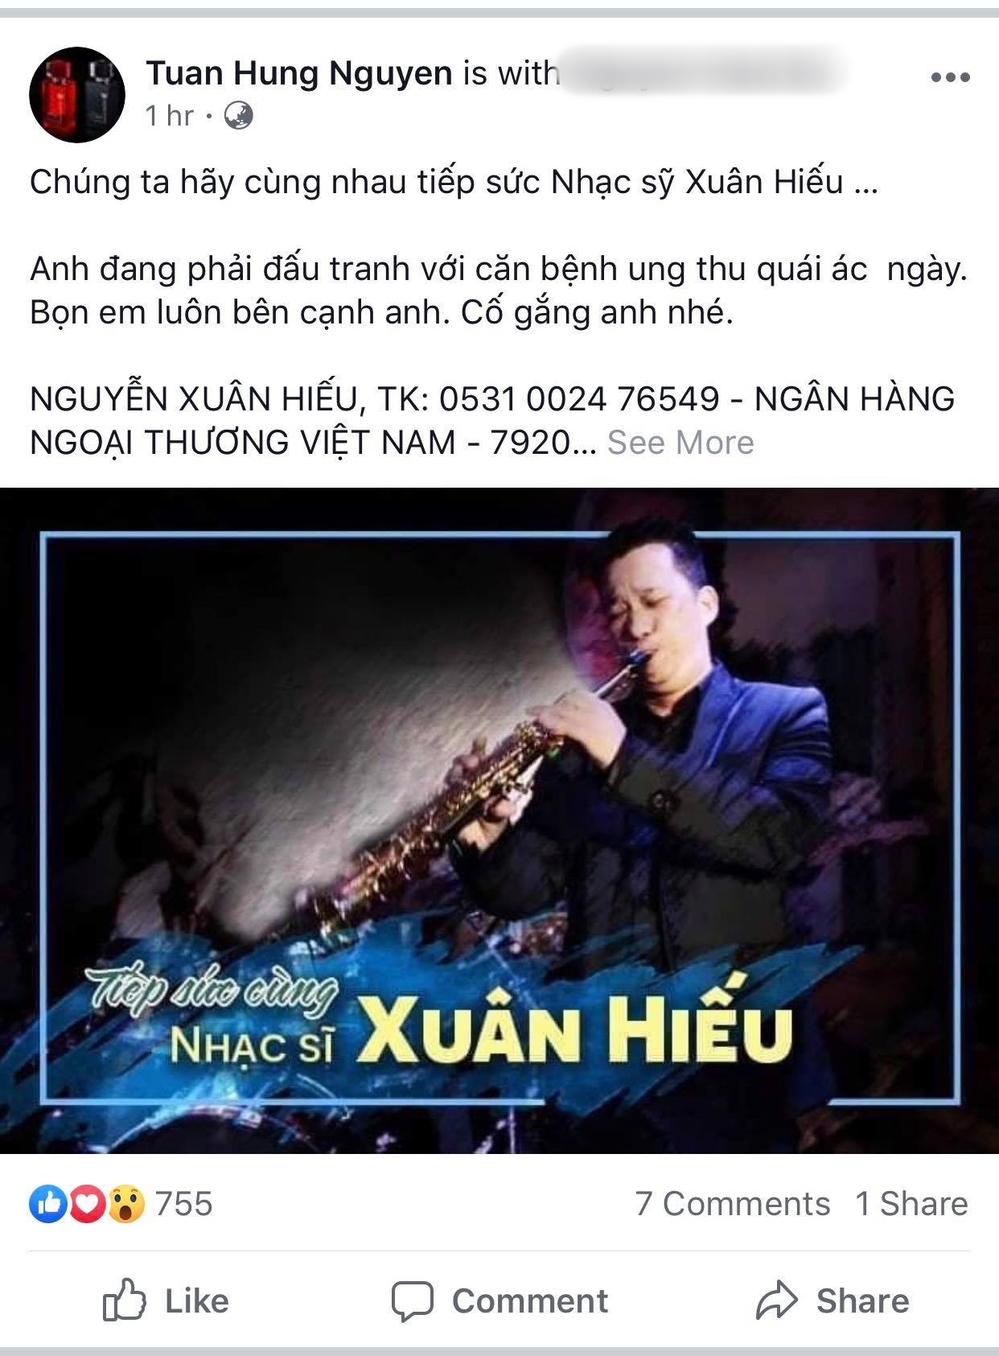 Thêm một nhạc sĩ tài hoa của Vbiz bị ung thư, dàn sao Việt chung tay kêu gọi ủng hộ